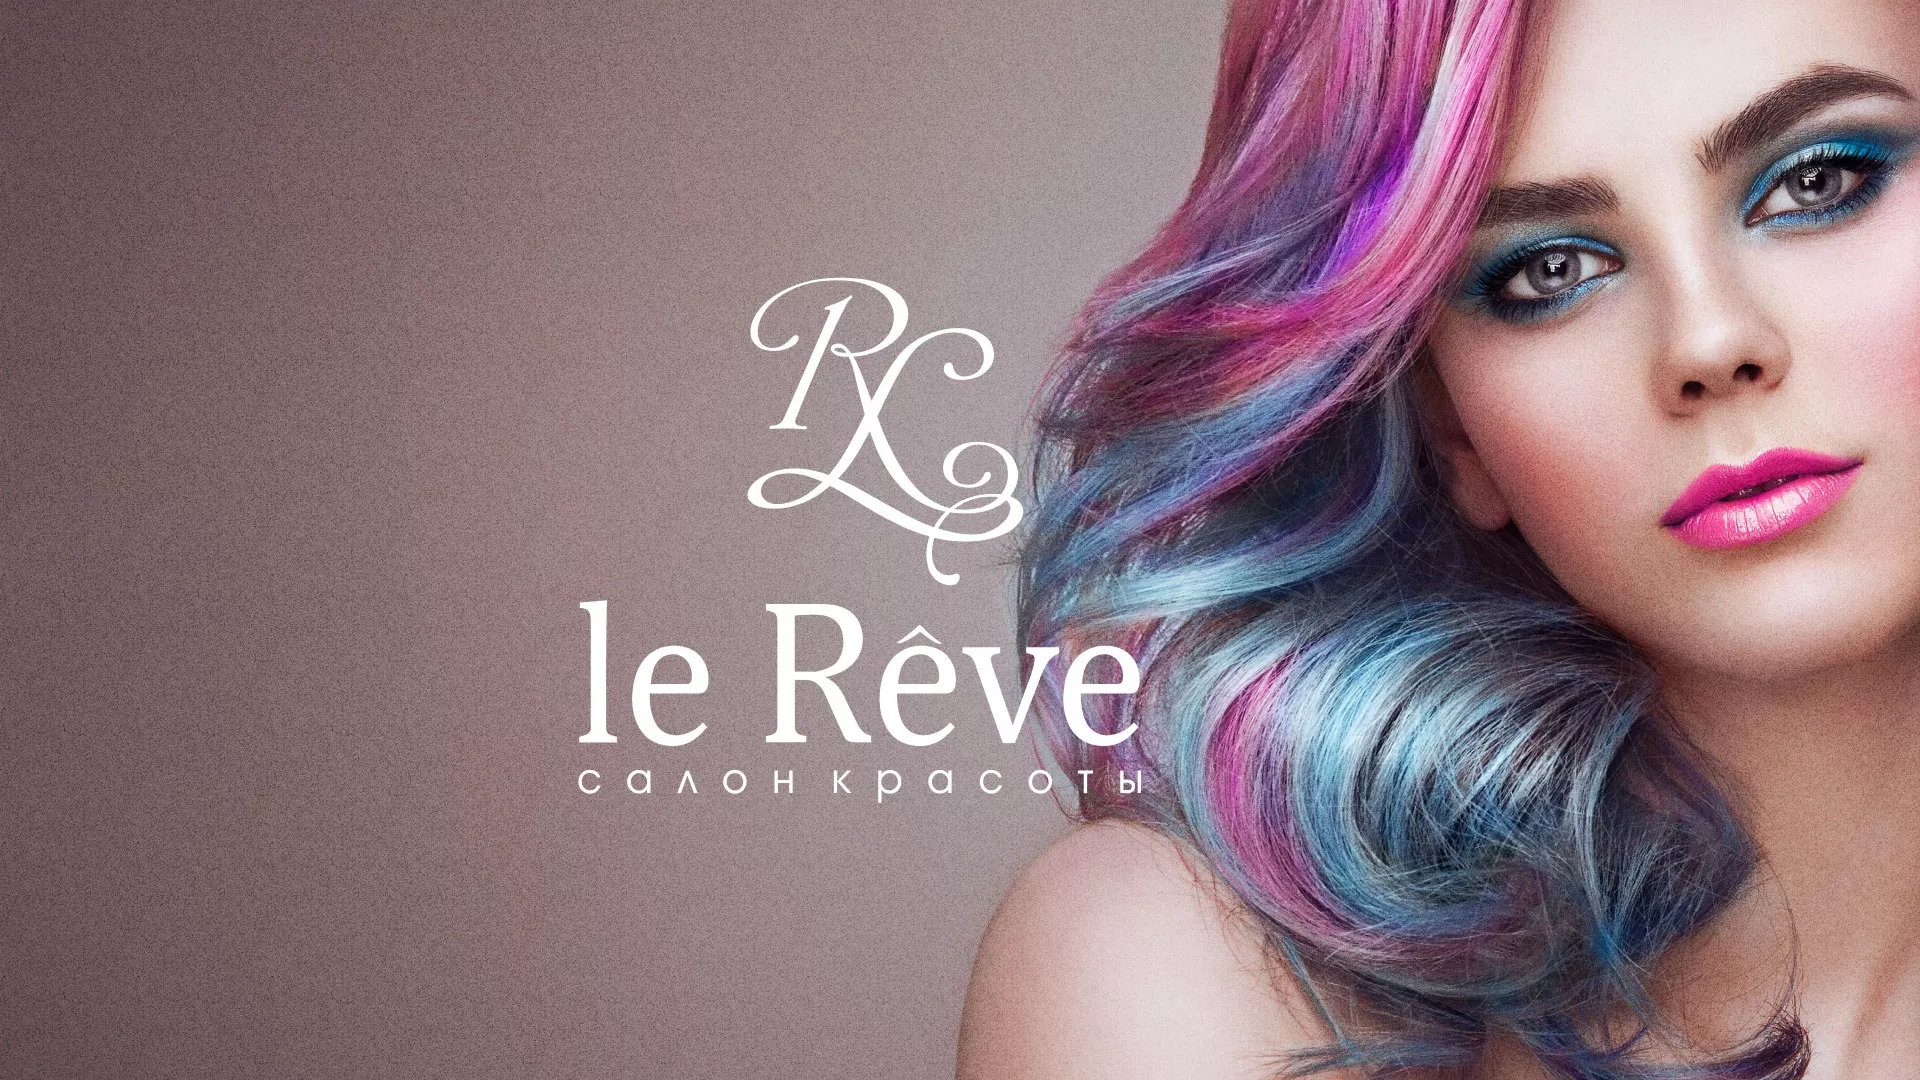 Создание сайта для салона красоты «Le Reve» в Новоаннинском